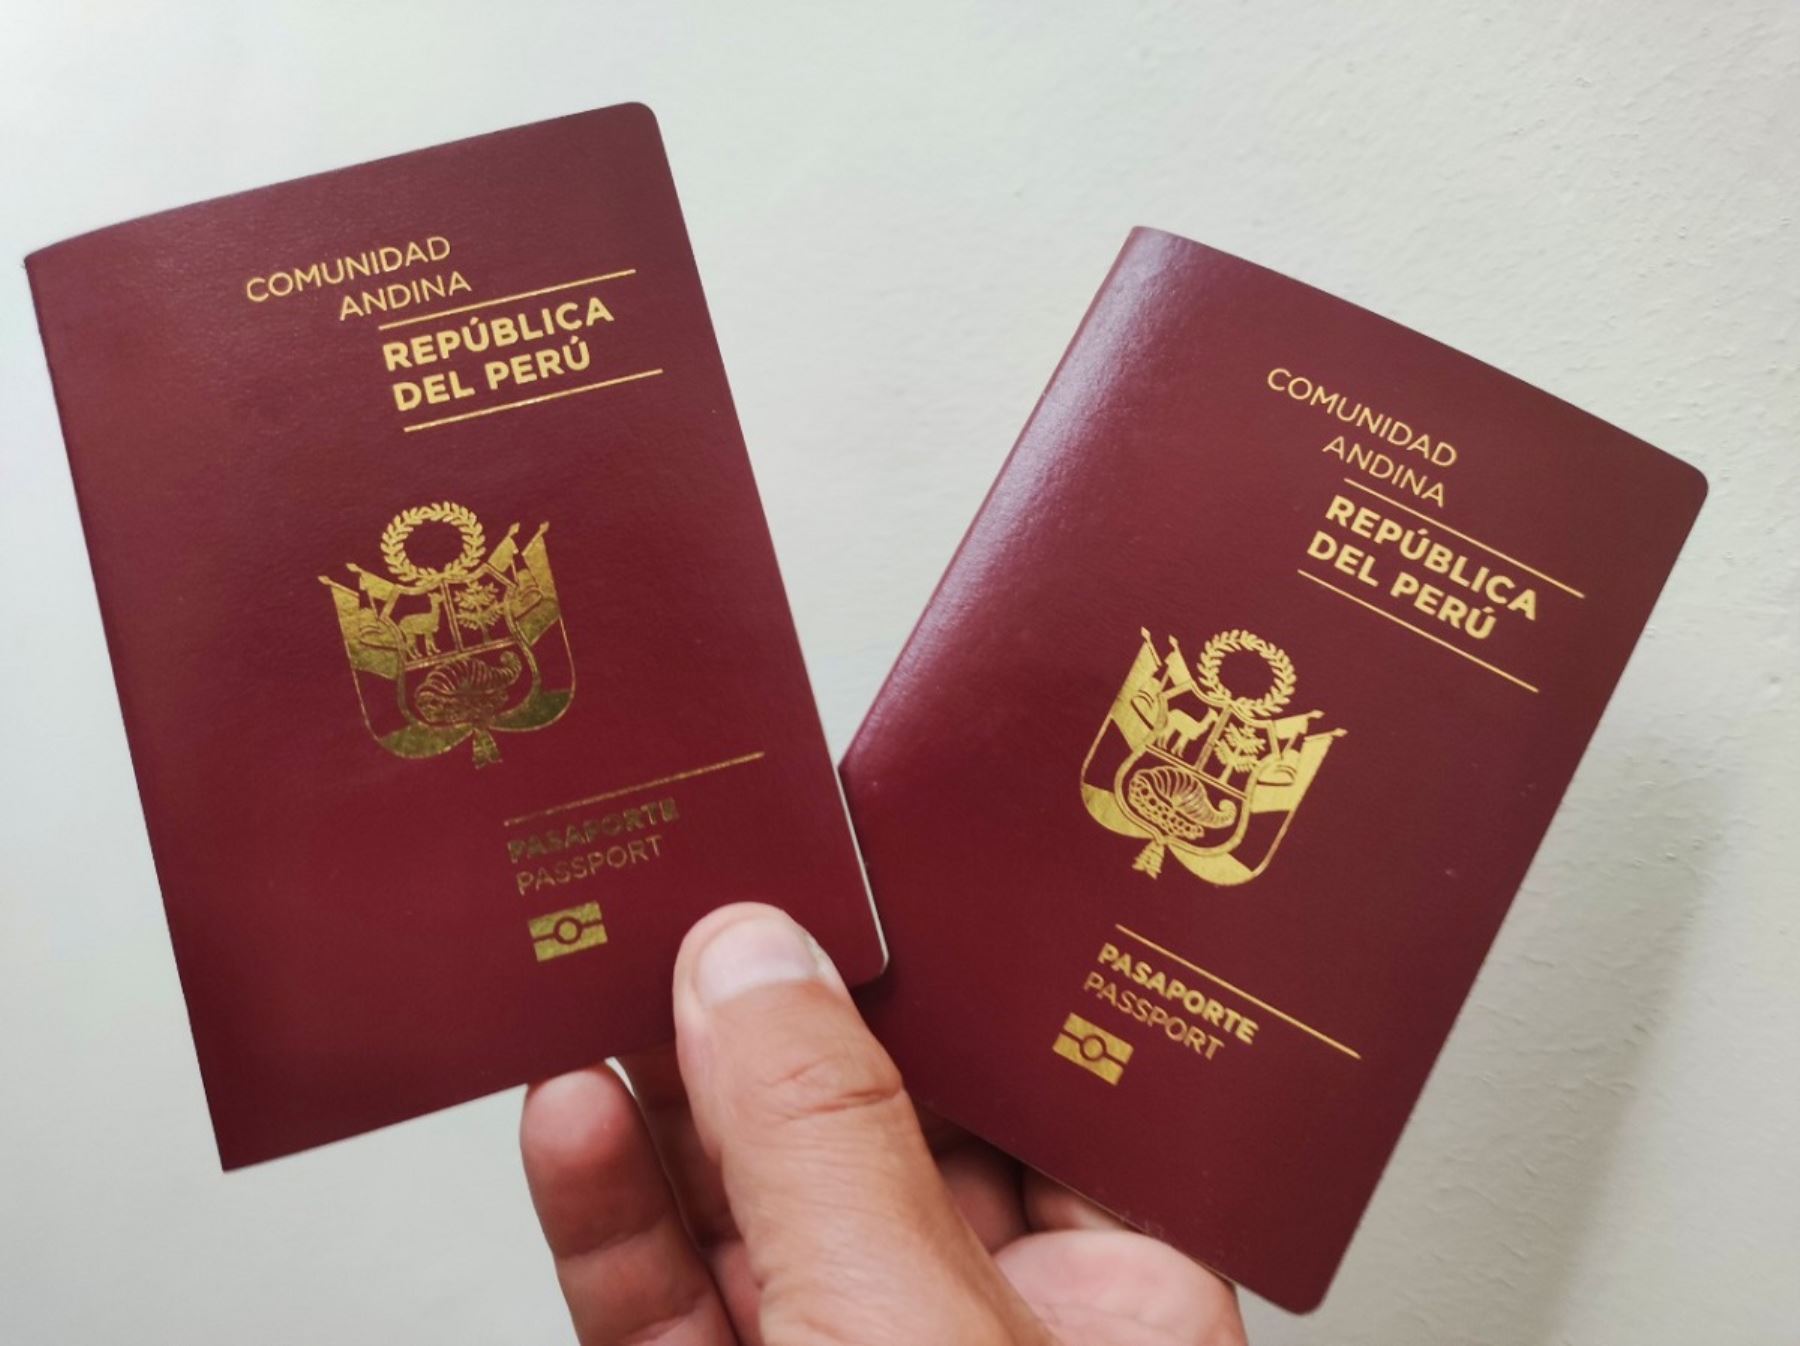 El 16 de mayo se inicia marcha blanca para trámites de pasaporte. Aquí la programación